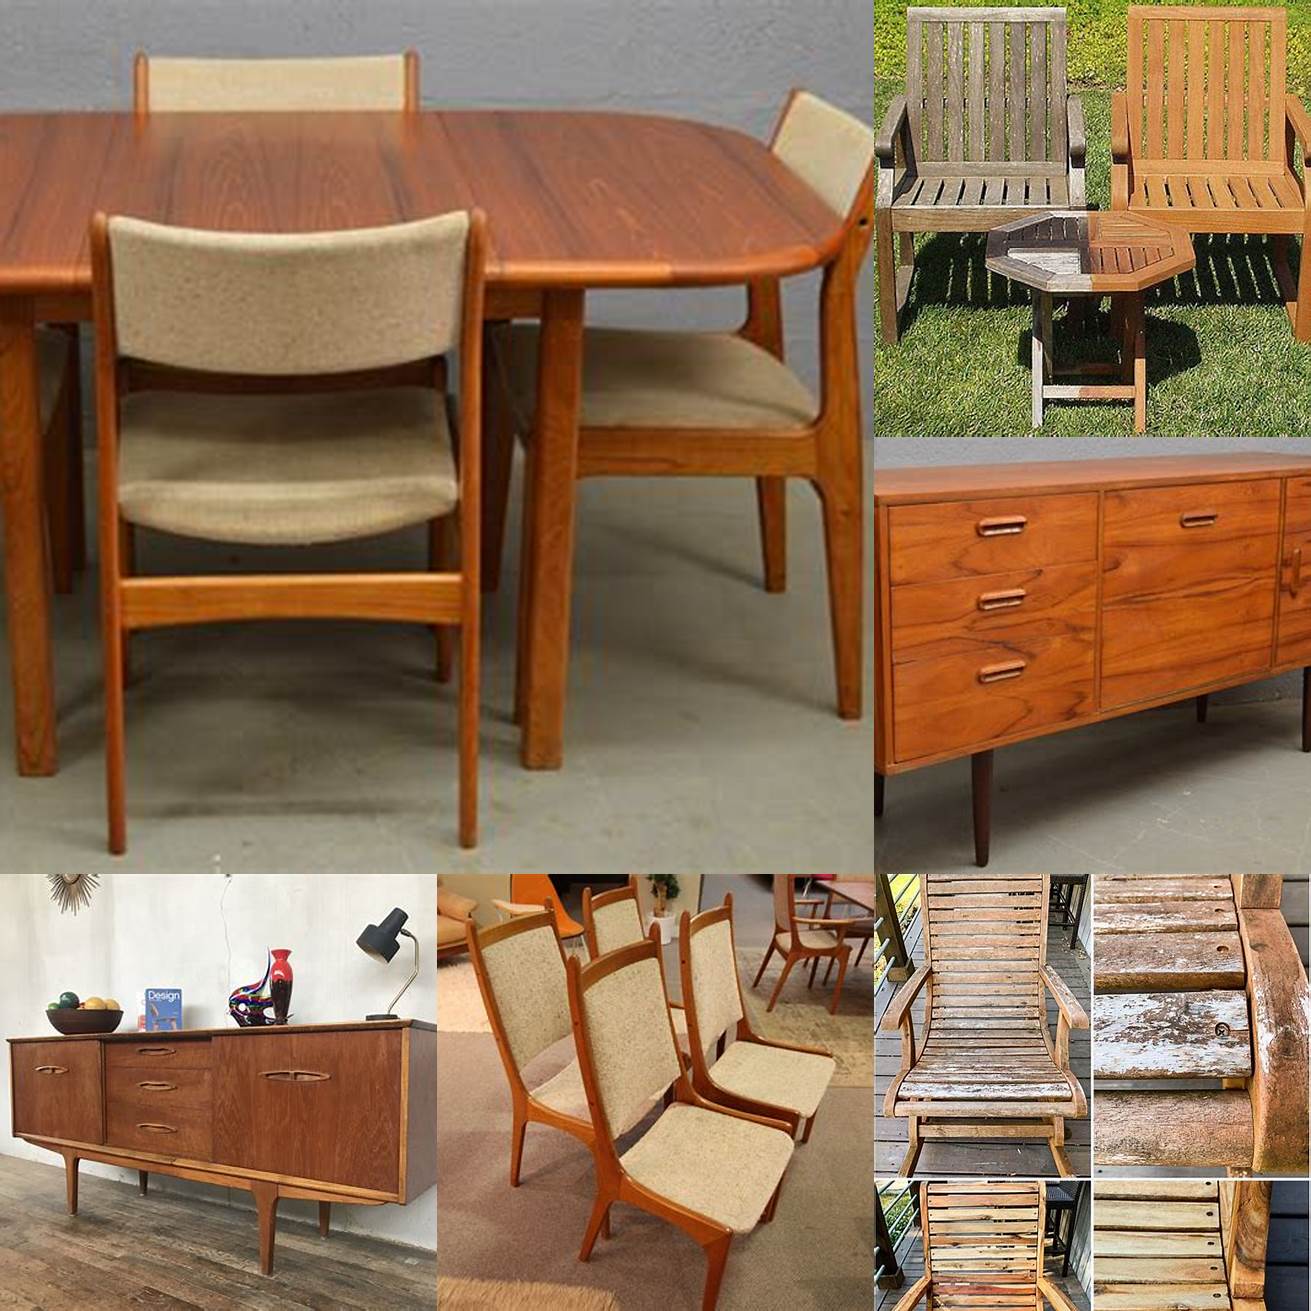 Caring for Your Vintage Teak Furniture